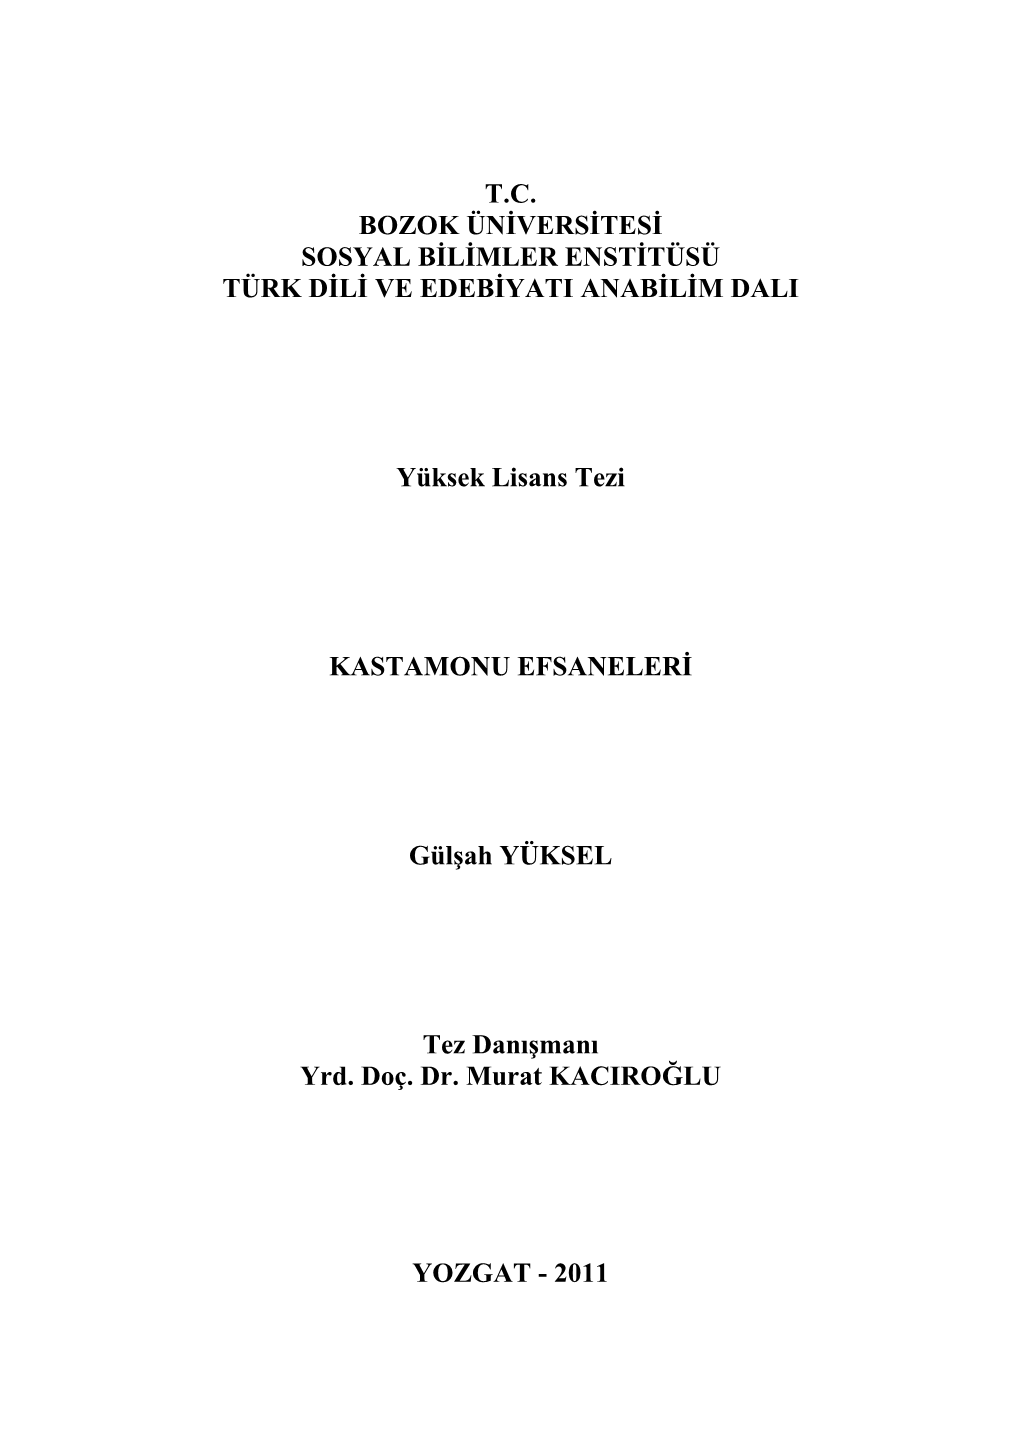 T.C. Bozok Üniversitesi Sosyal Bilimler Enstitüsü Türk Dili Ve Edebiyati Anabilim Dali